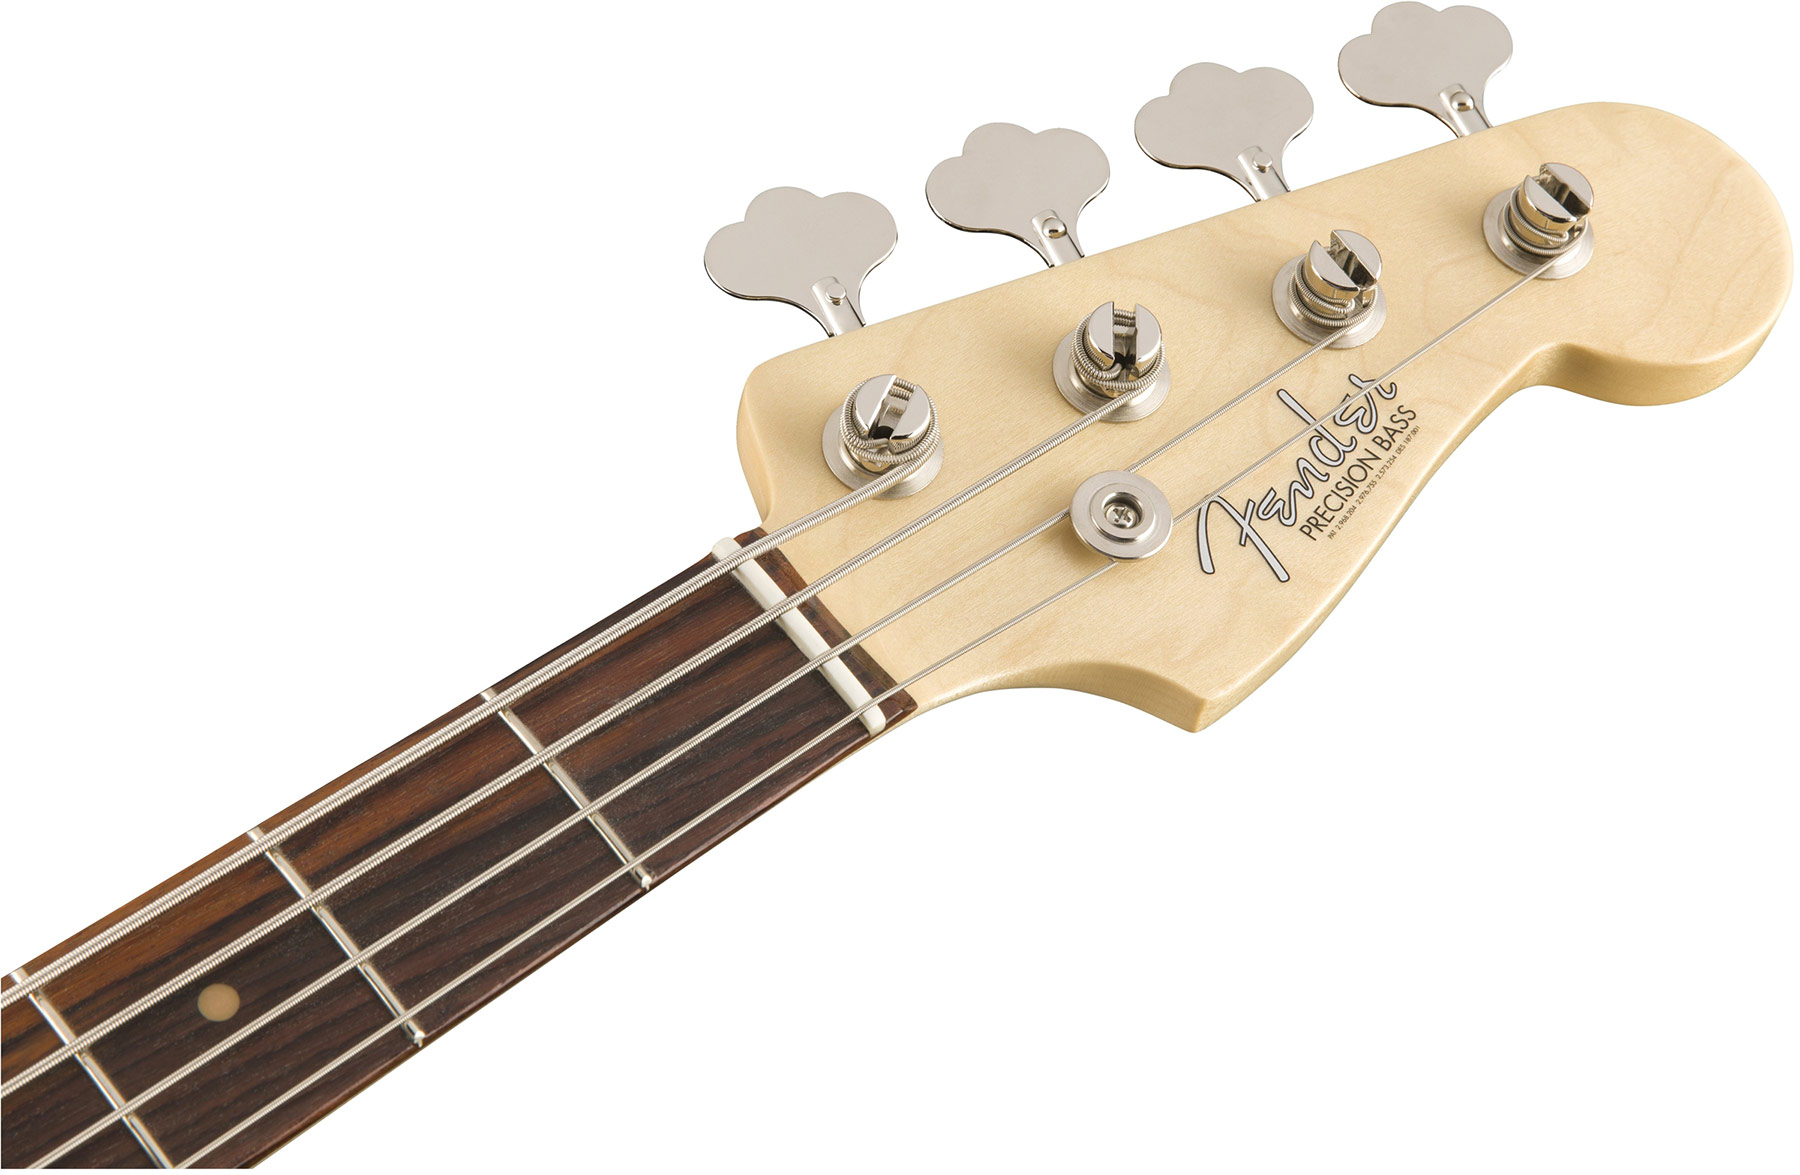 Fender Precision Bass '60s American Original Usa Rw - 3-color Sunburst - Solidbody E-bass - Variation 1